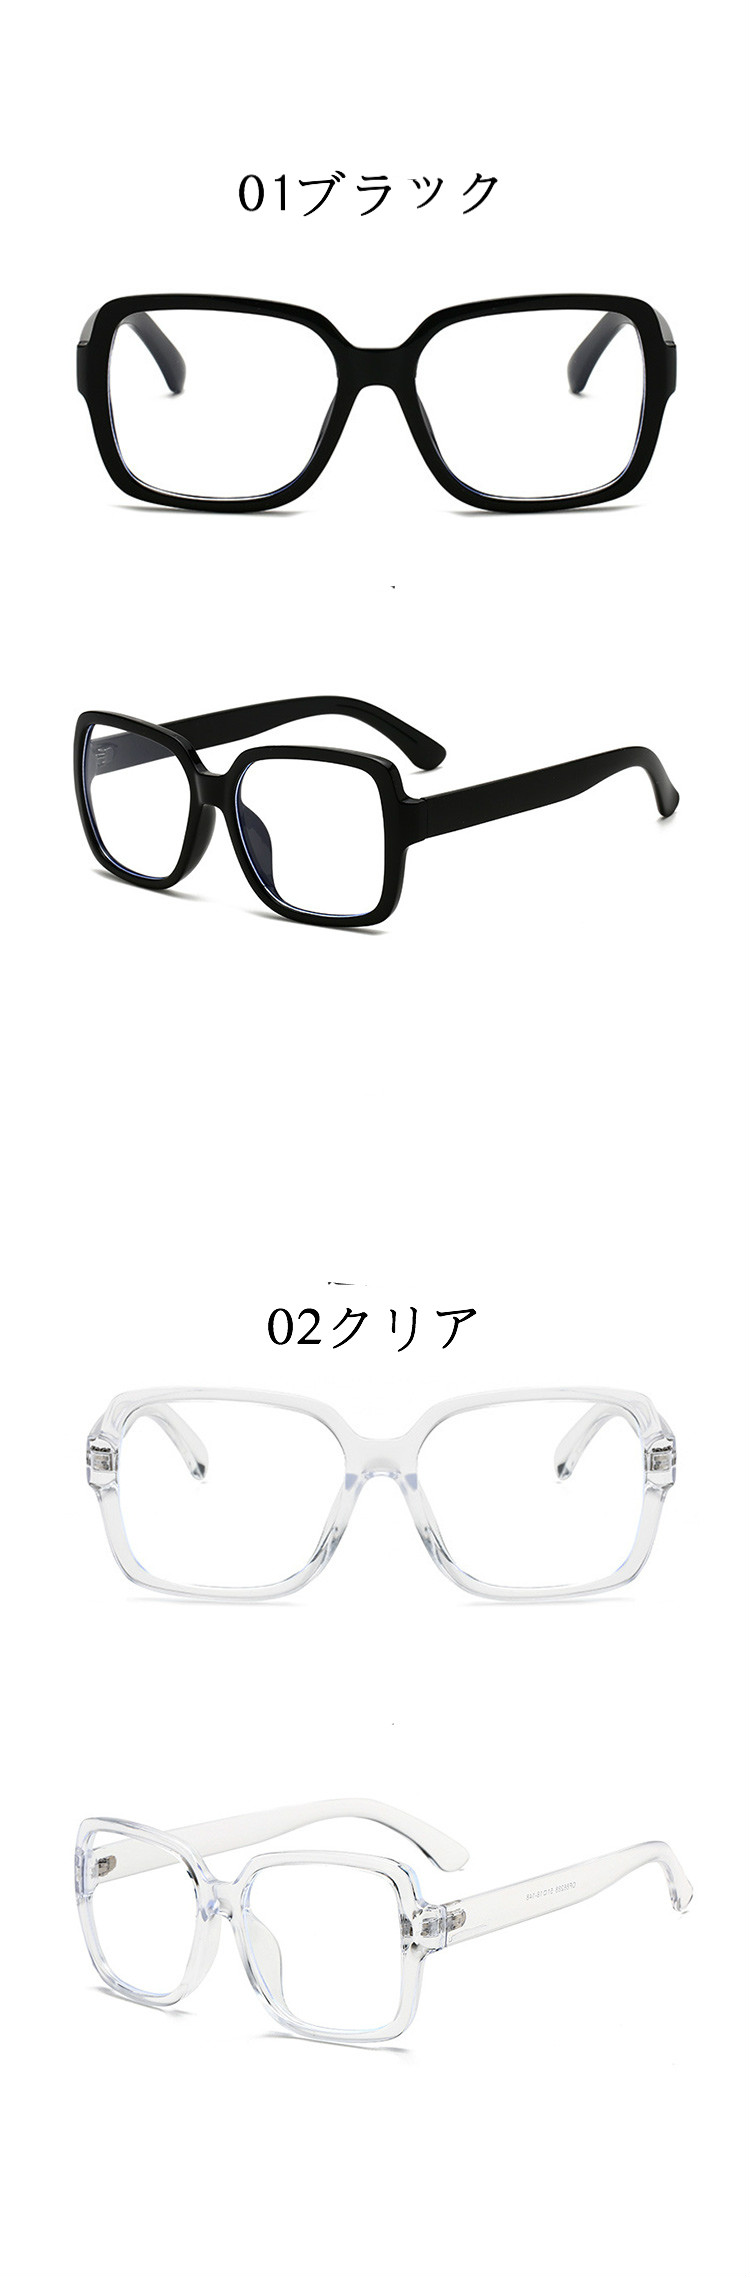 激安メガネ太いフレームおしゃれインスタ人気おすすめメガネ伊達眼鏡有名人